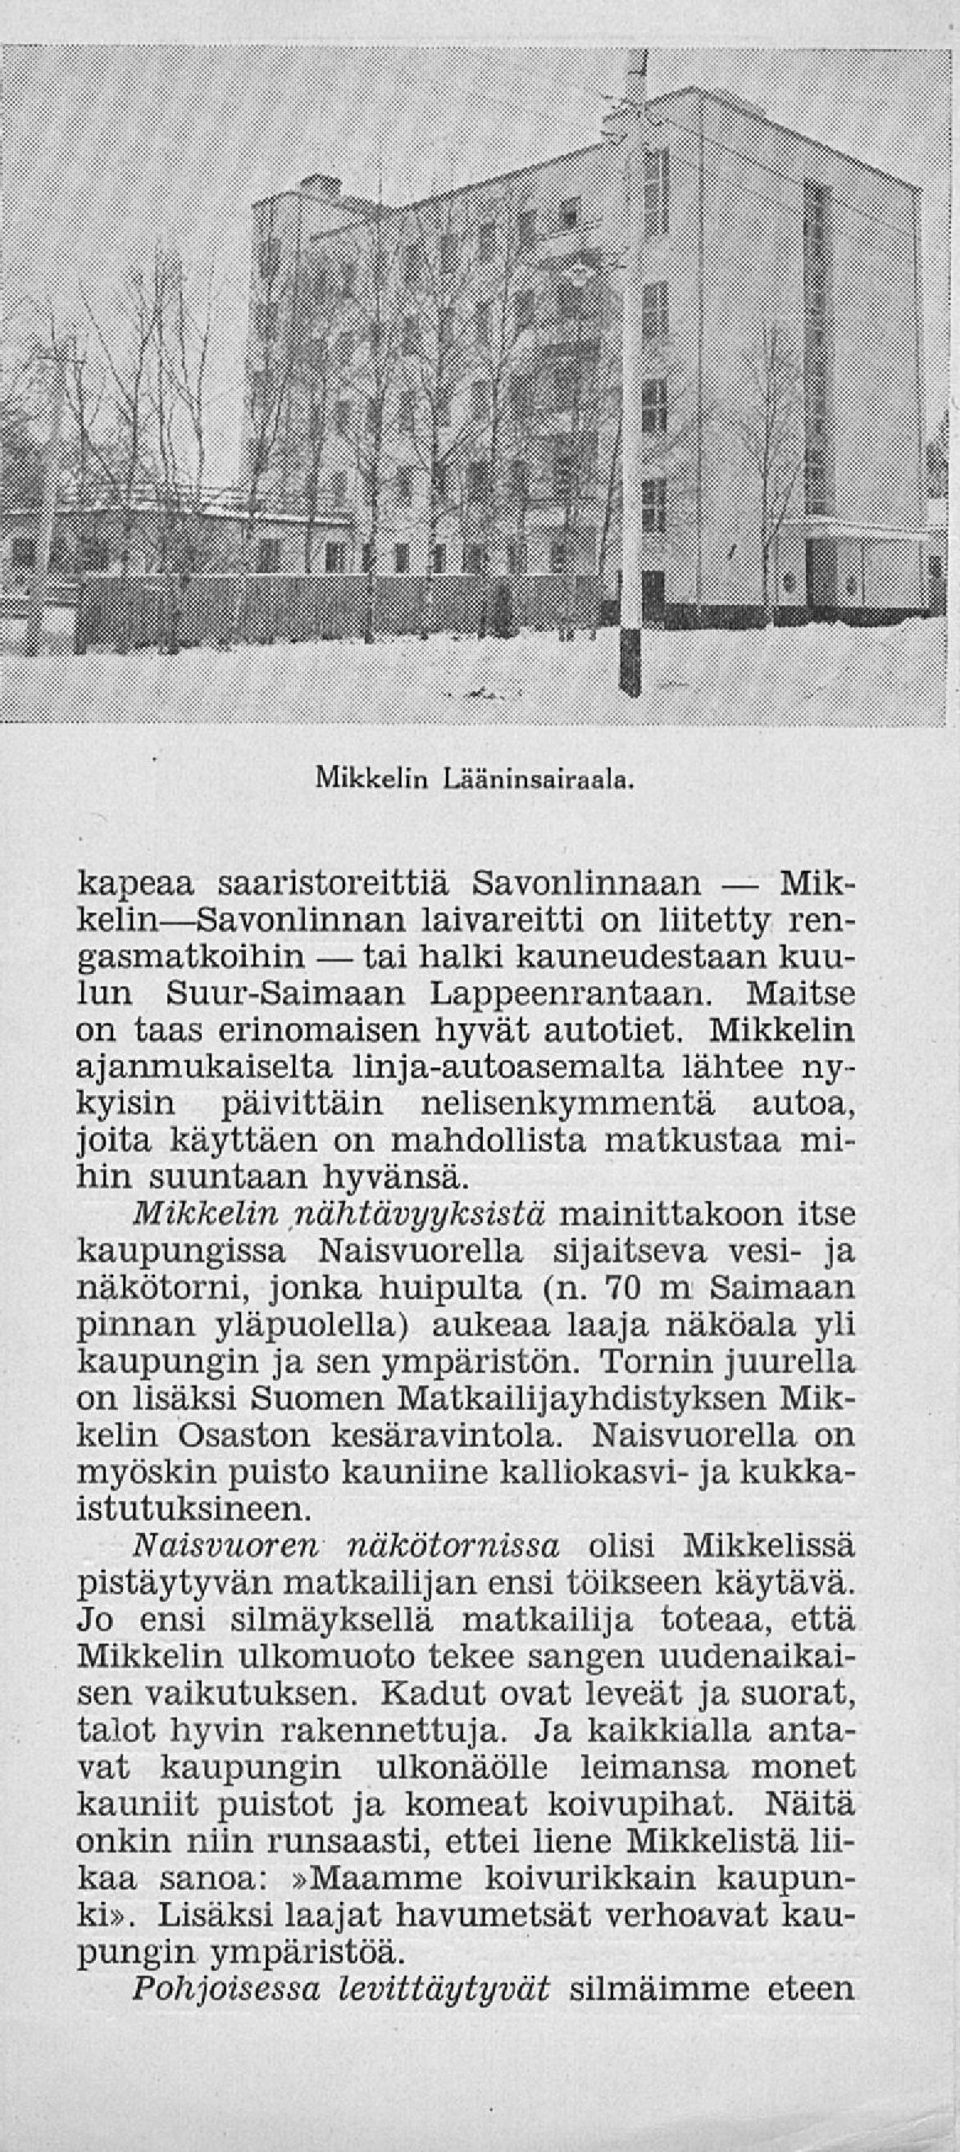 Mikkelin nähtävyyksistä mainittakoon itse kaupungissa Naisvuorella sijaitseva vesi- ja näkötorni, jonka huipulta (n.